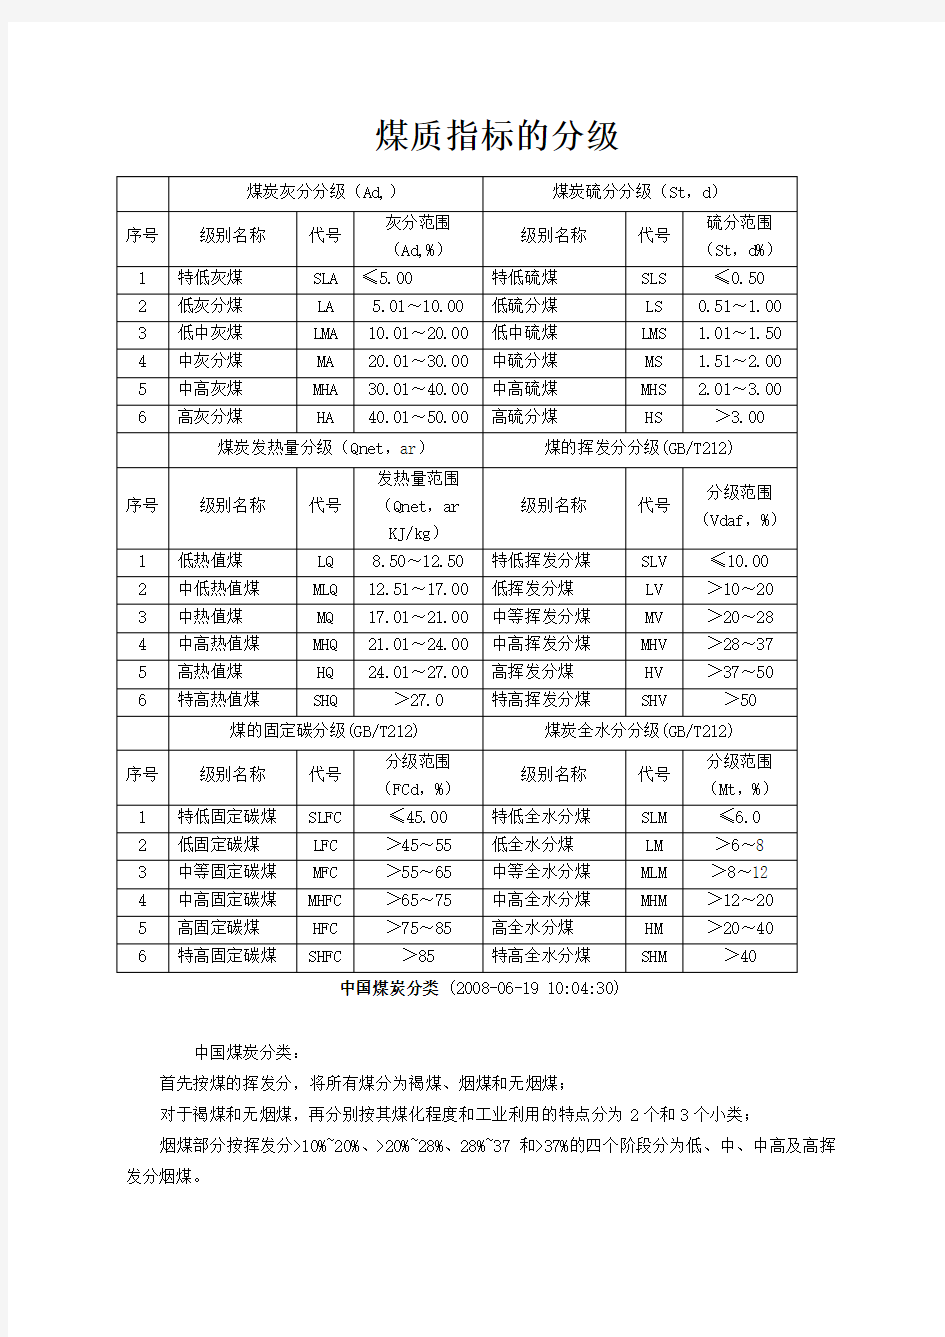 中国煤炭分类煤质指标的分级